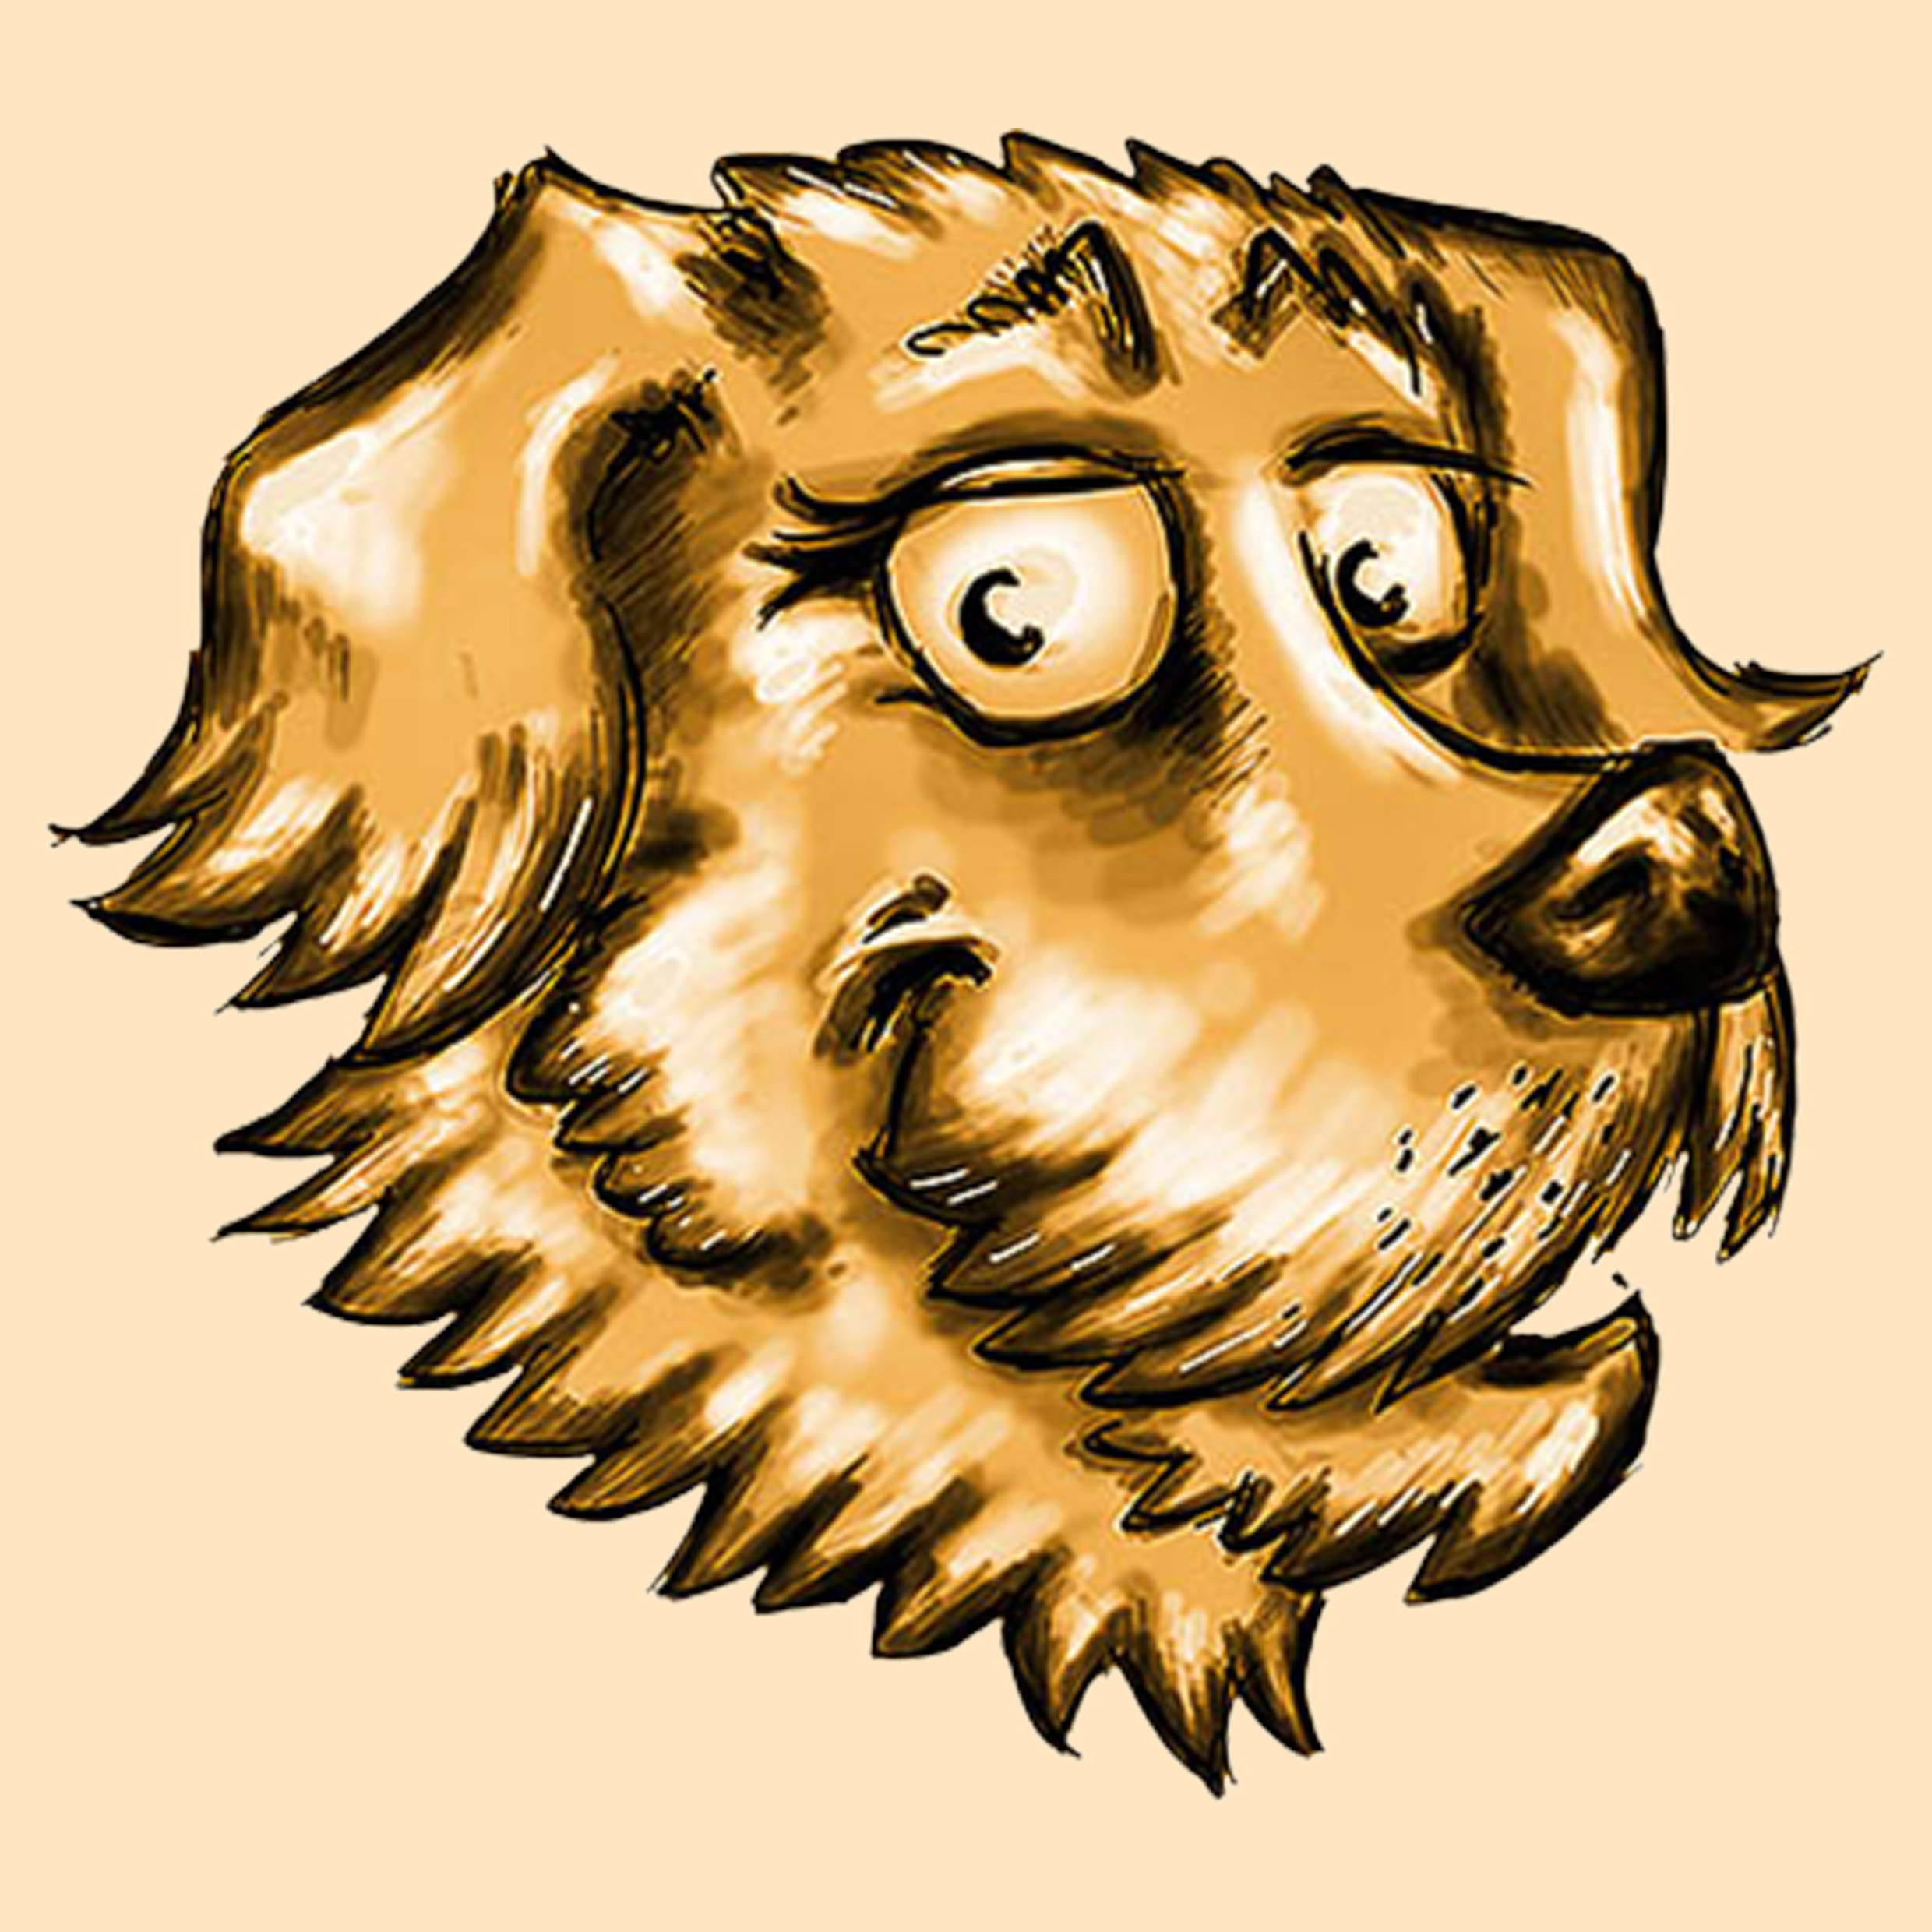 Hundeschule Angebot und Preise - Hunde verstehen lernen - Hundekopf Zeichnung